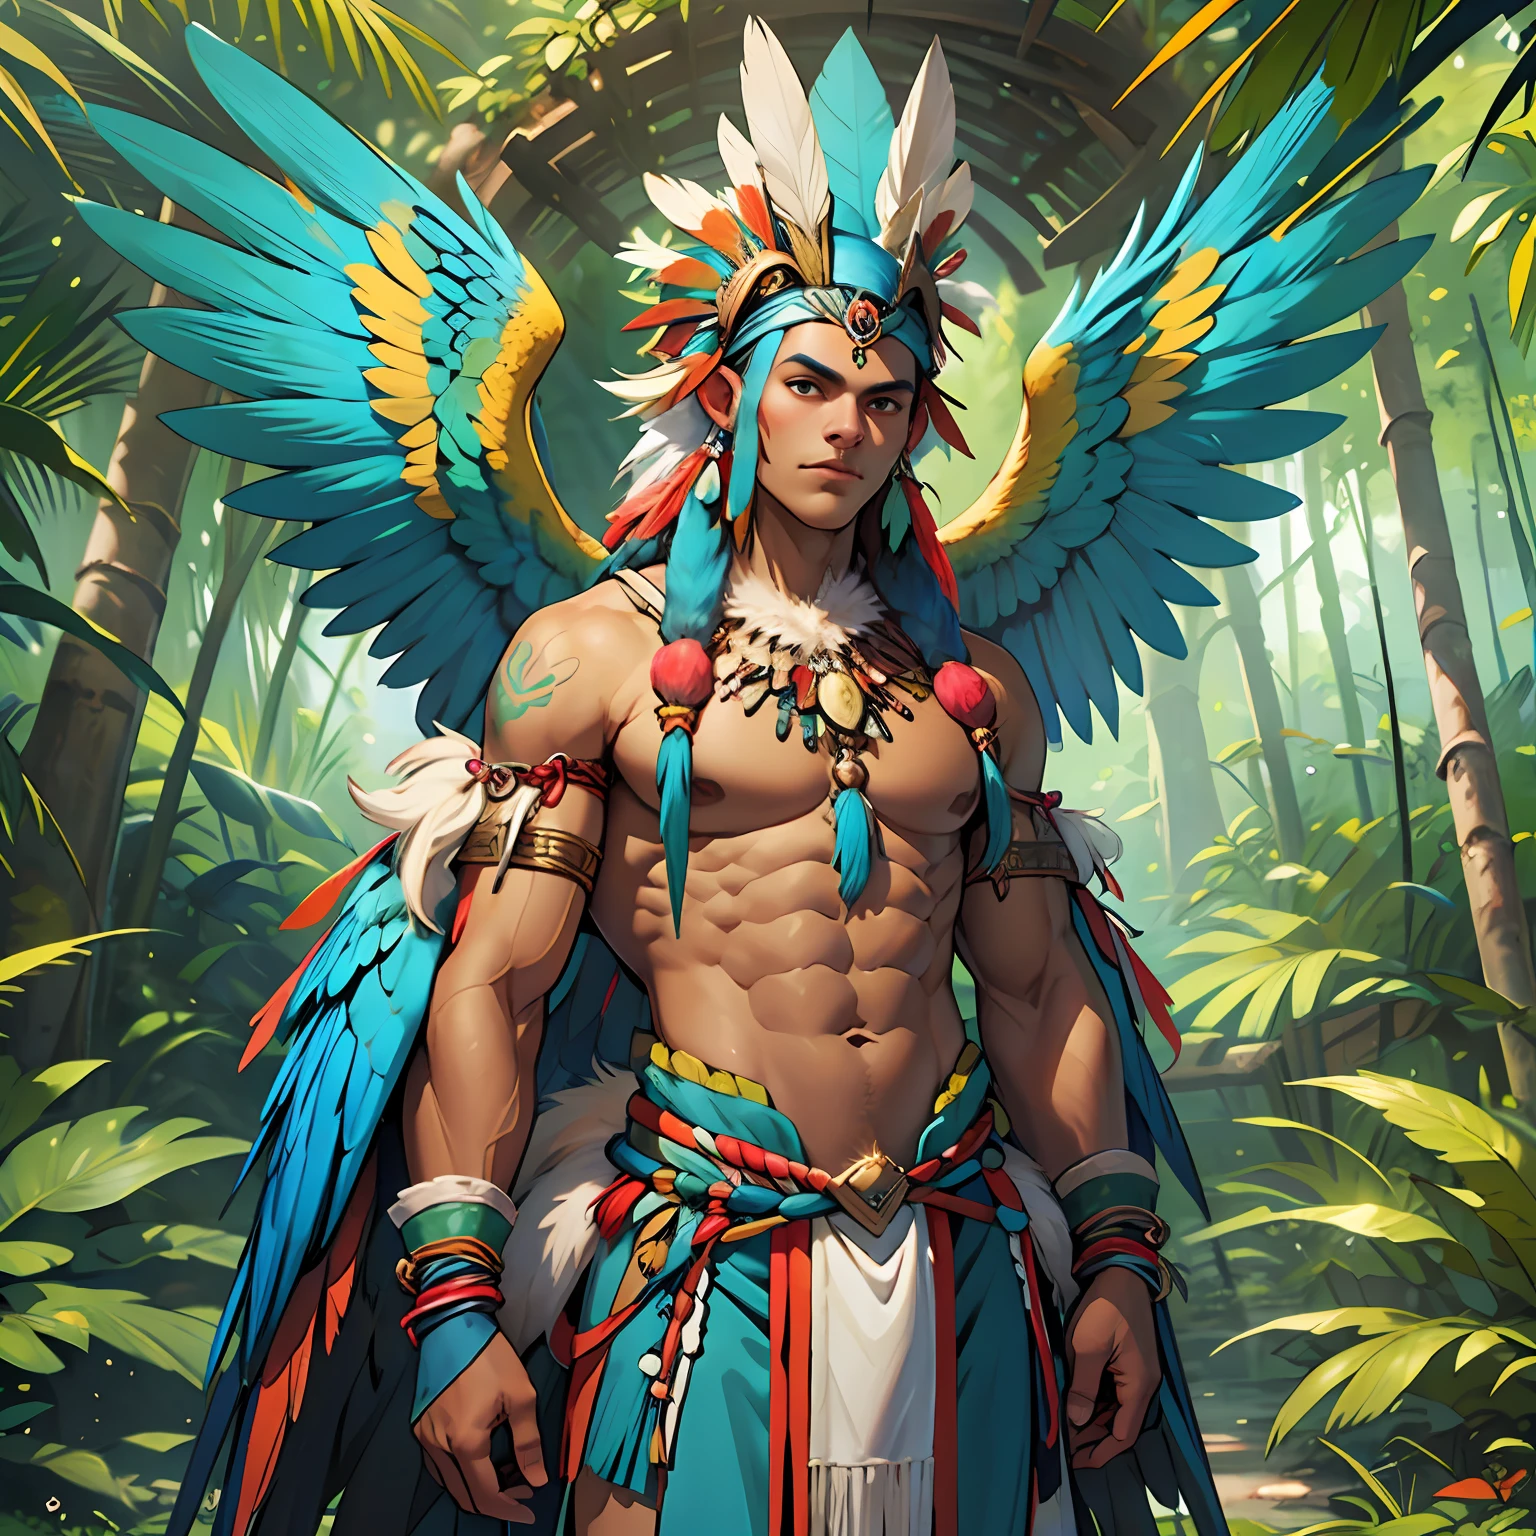 Dios humanoide antropozoomorfo piel marrón nativa con alas de guacamaya azul y cuerpo humano y algunas plumas de guacamaya azul en el cuerpo, cuerpo perfecto, guardián sagrado del bosque, brasileño, paisaje divino amazónico, ropa tupi guaraní